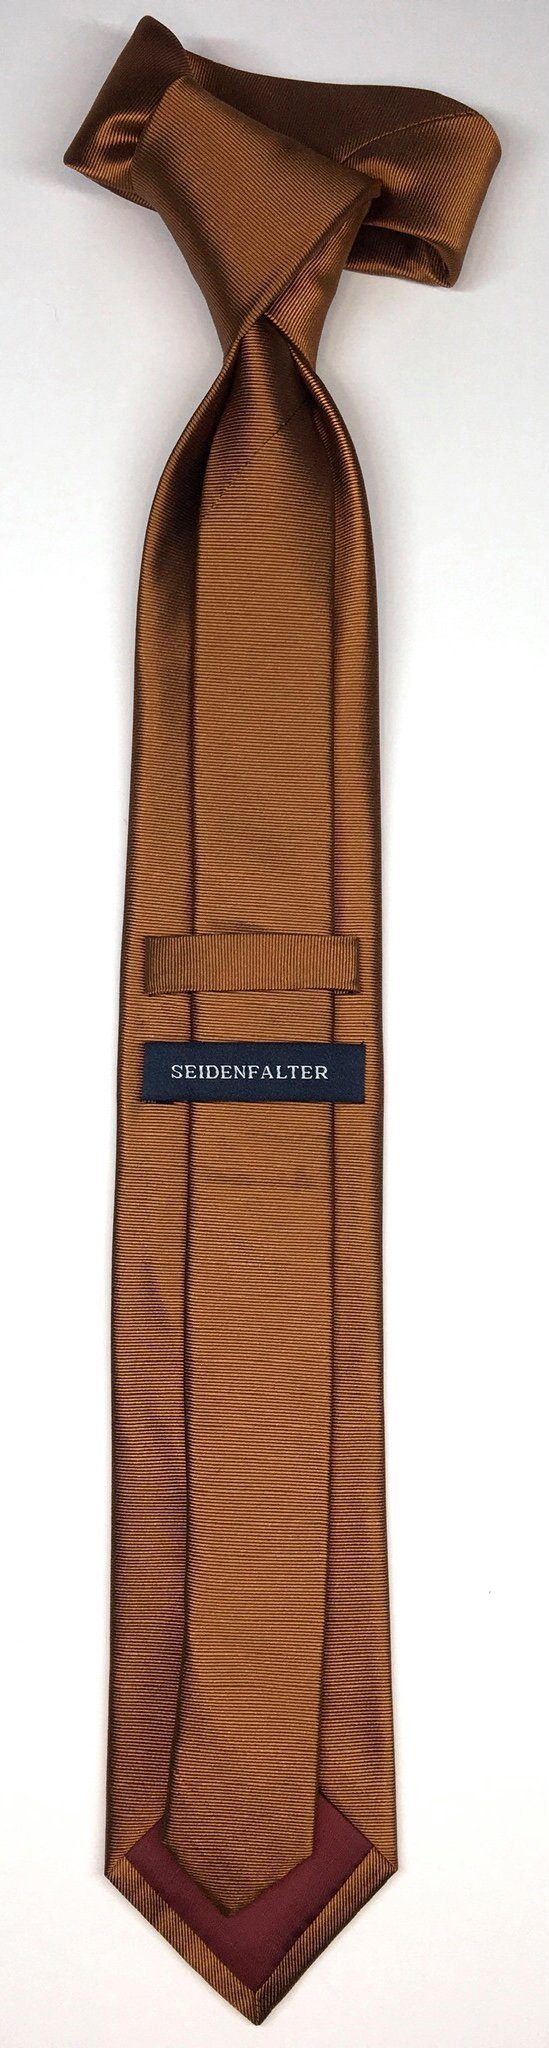 Seidenfalter Uni Seidenfalter 7cm Design im Krawatte Uni edlen Seidenfalter Krawatte Krawatte Cognac